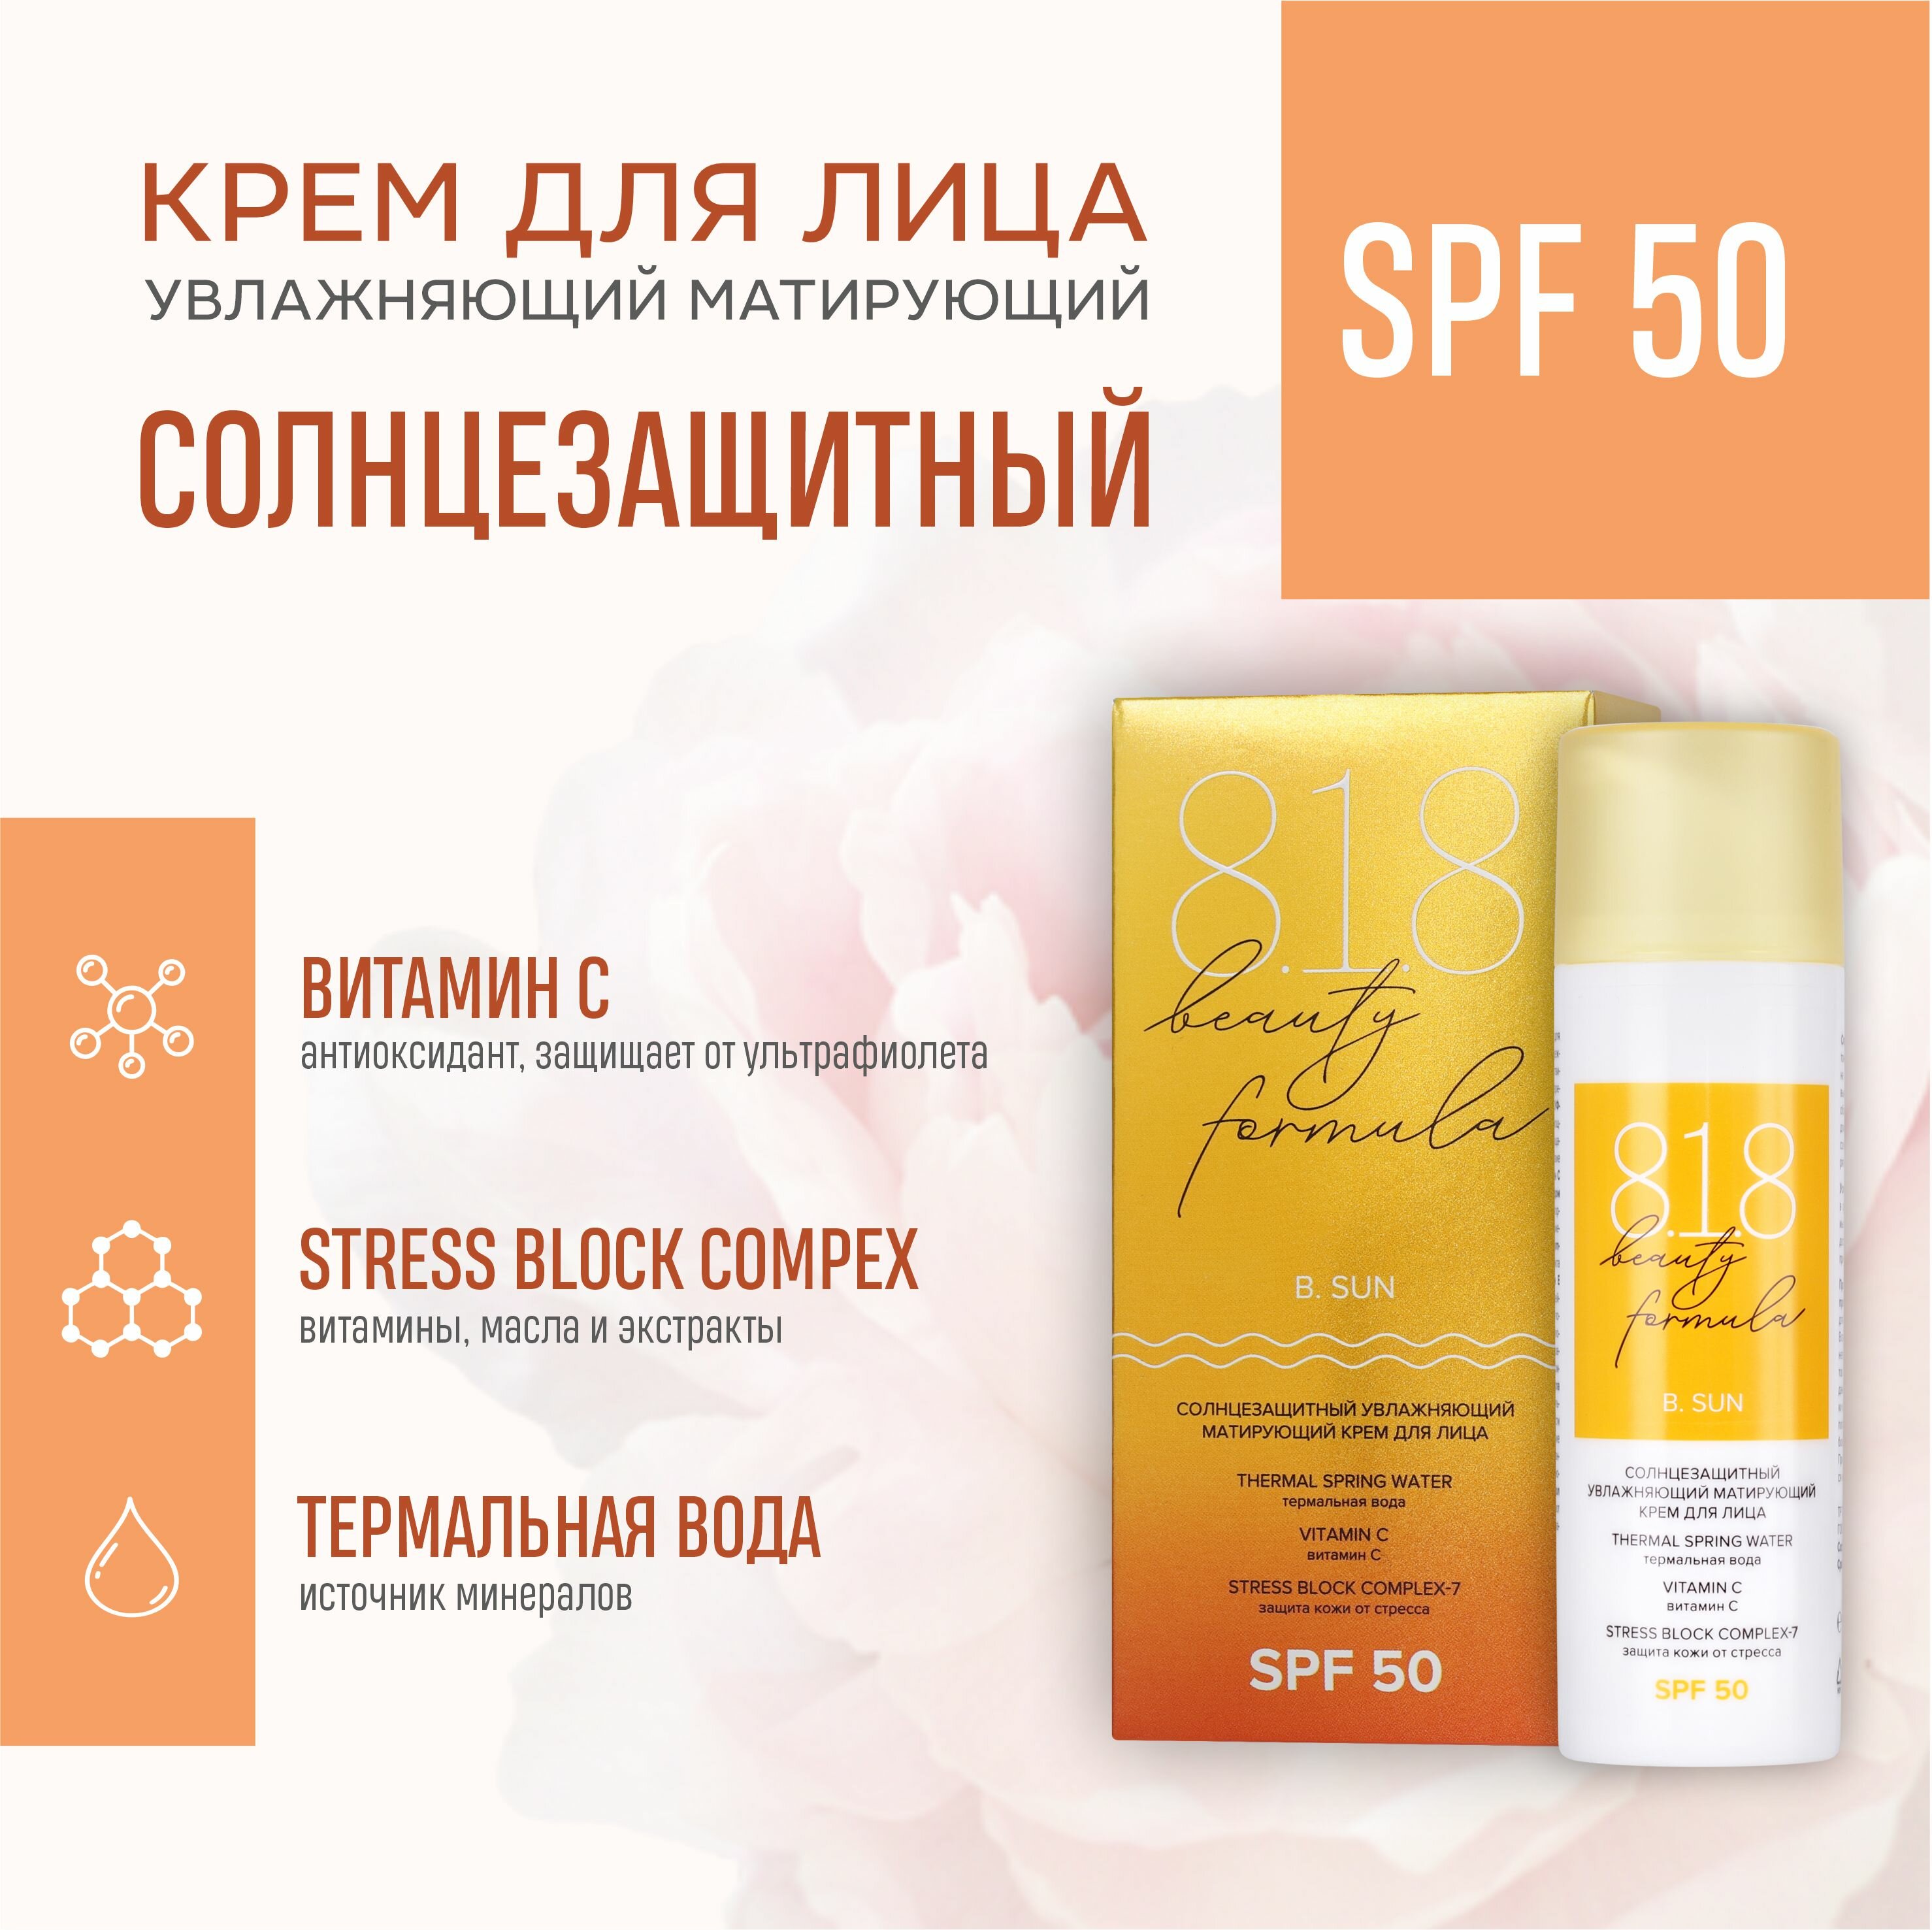 Солнцезащитный матирующий крем для лица 818 beauty formula SPF 50 50 мл a pieu крем для лица pure block солнцезащитный spf 50 50